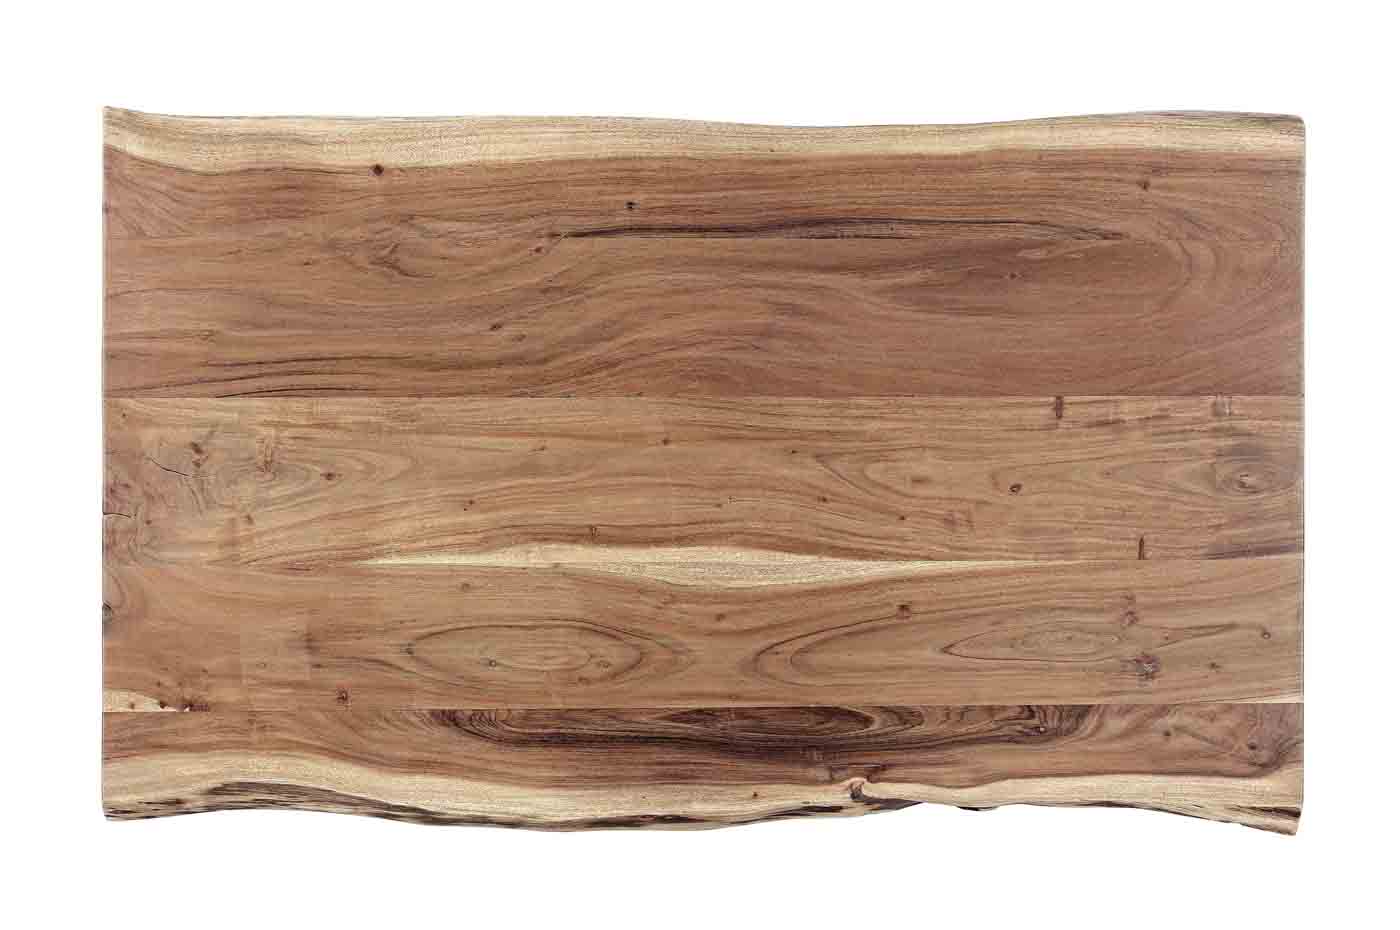 Der Beistelltisch Aron besitzt eine aus Akazienholz hergestellte Tischplatte. Durch die Verwendung von Naturprodukten ist jedes Stück ein Unikat. Das Gestell wurde aus Stahl gefertigt.